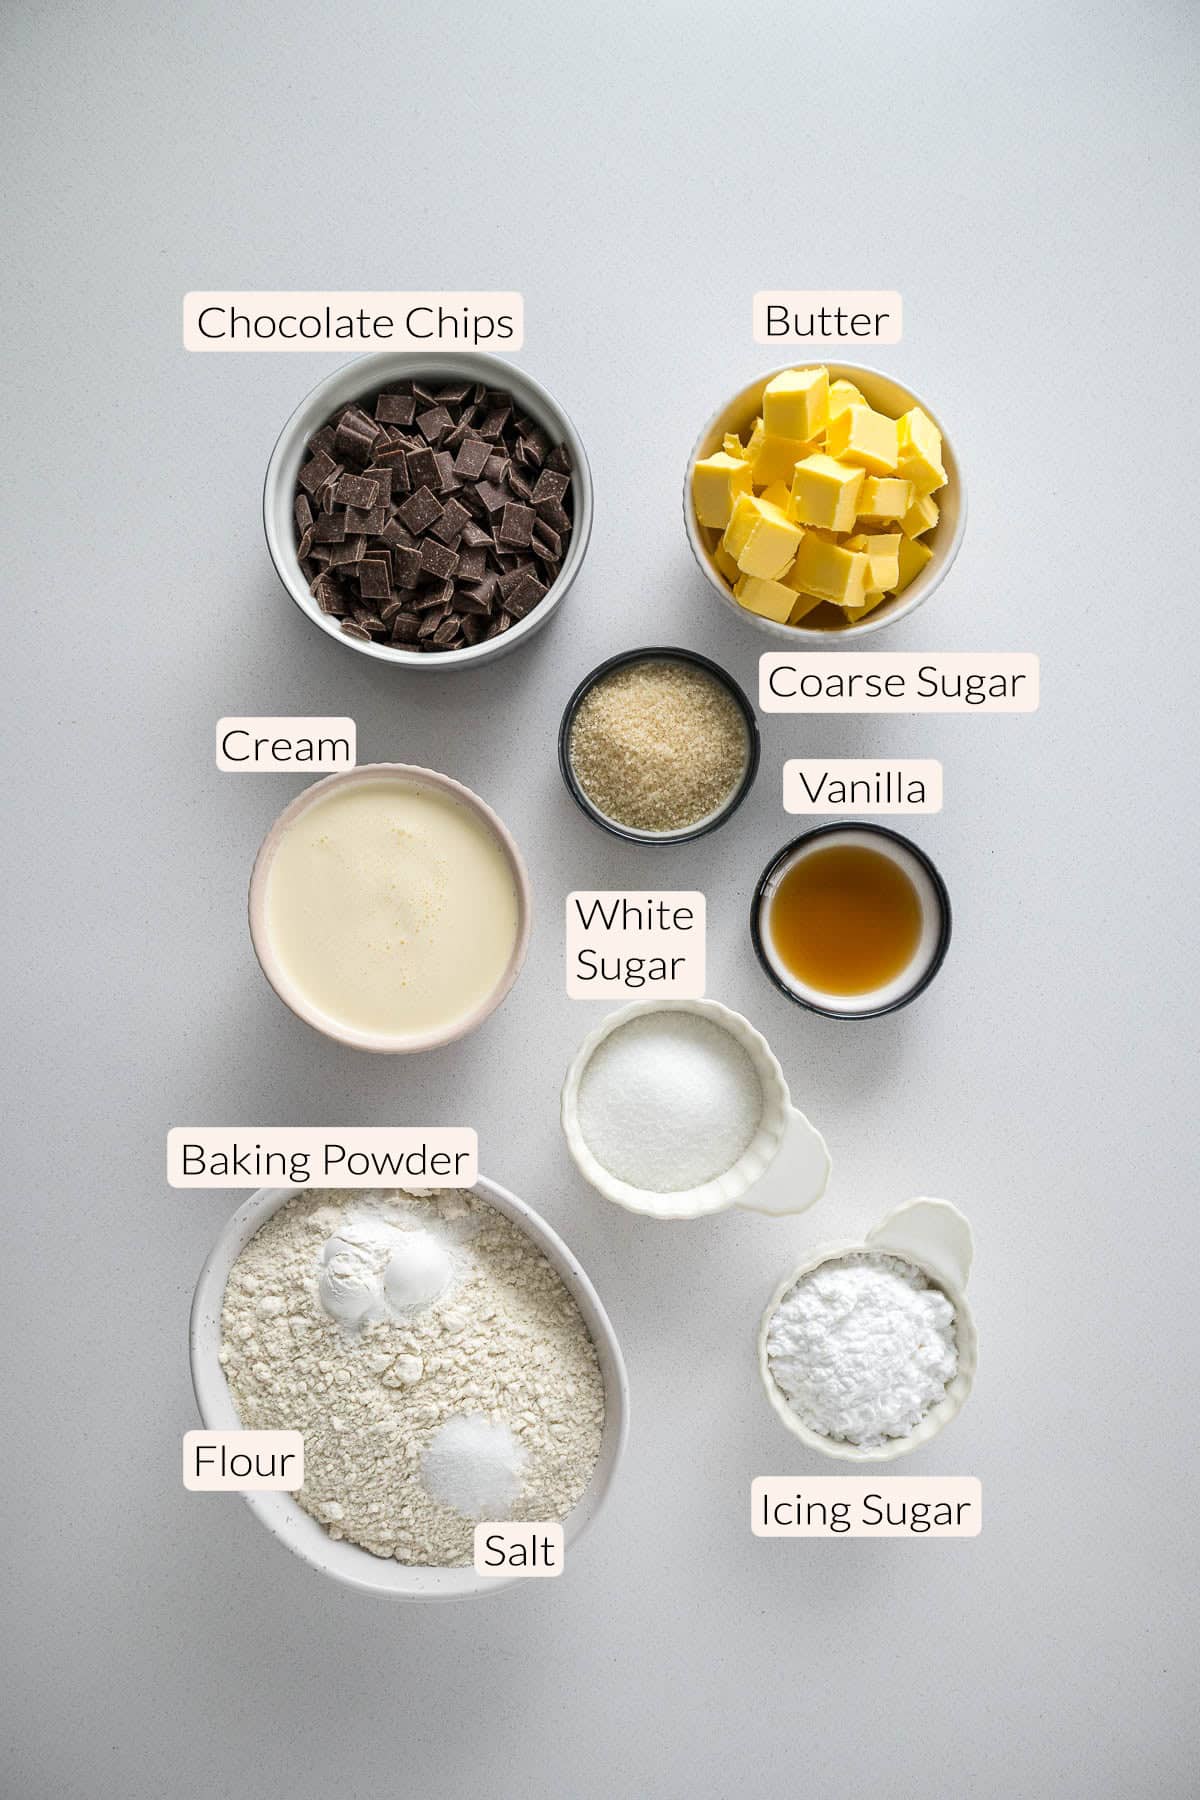 Chocolate chip scones ingredients - chocolate chips, butter, cream, coarse sugar, vanilla, white sugar, baking powder, flour, salt, and icing sugar.